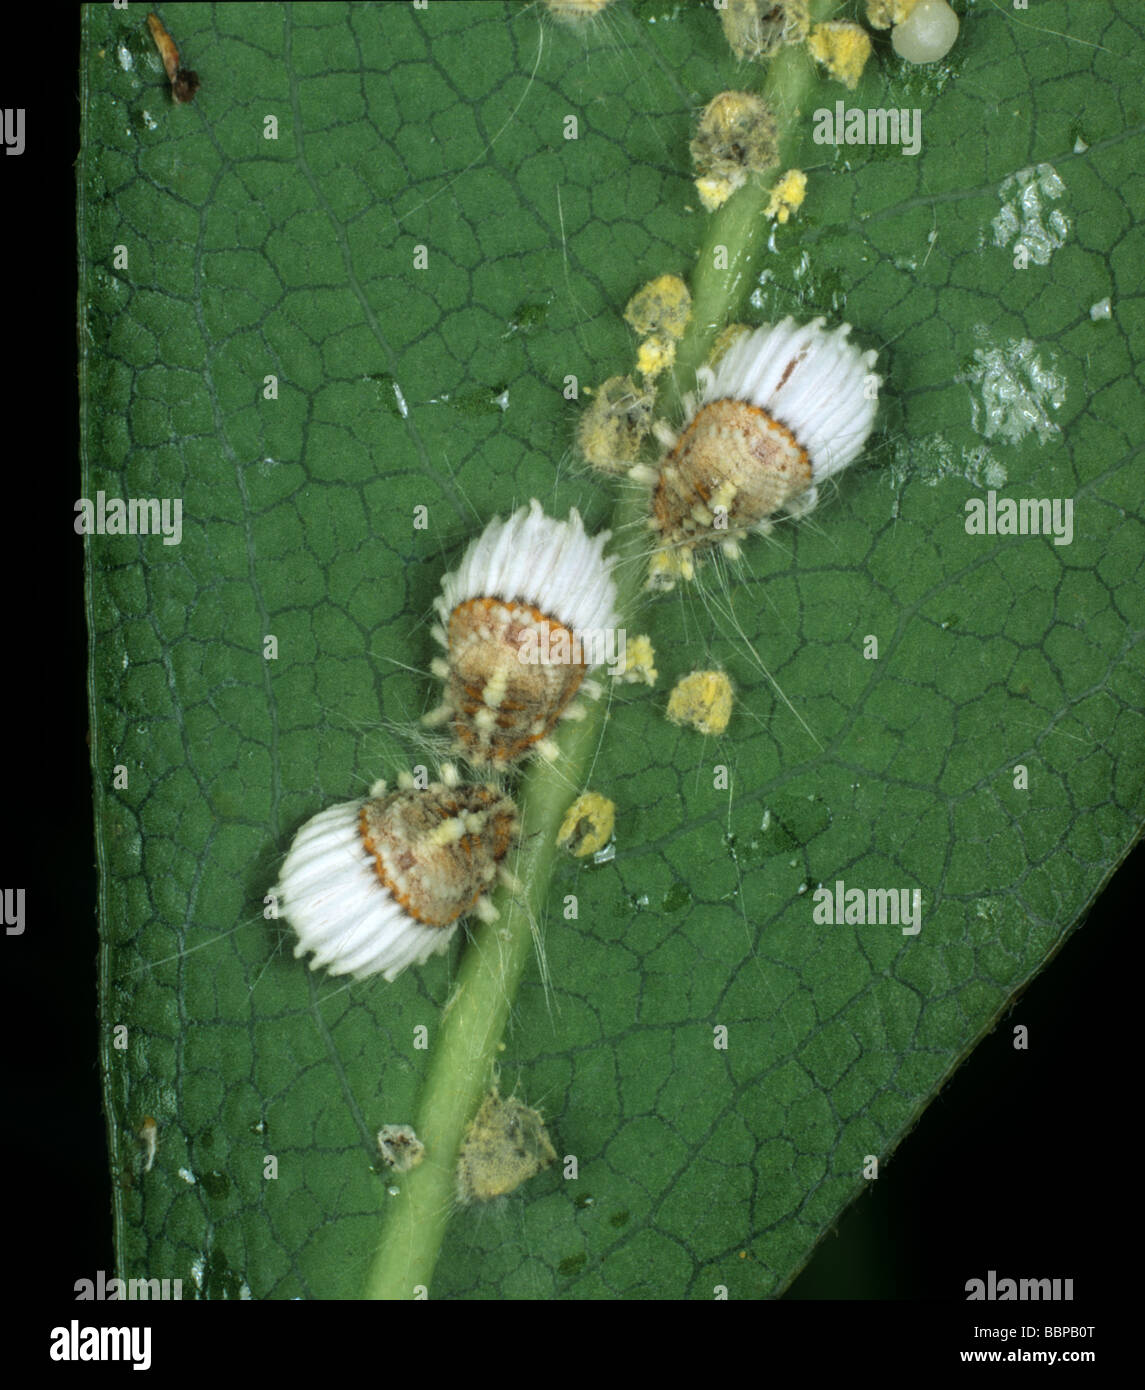 Échelle Icerya purchasi coussin cotonneuse adultes et juvéniles sur une feuille d'agrumes Banque D'Images